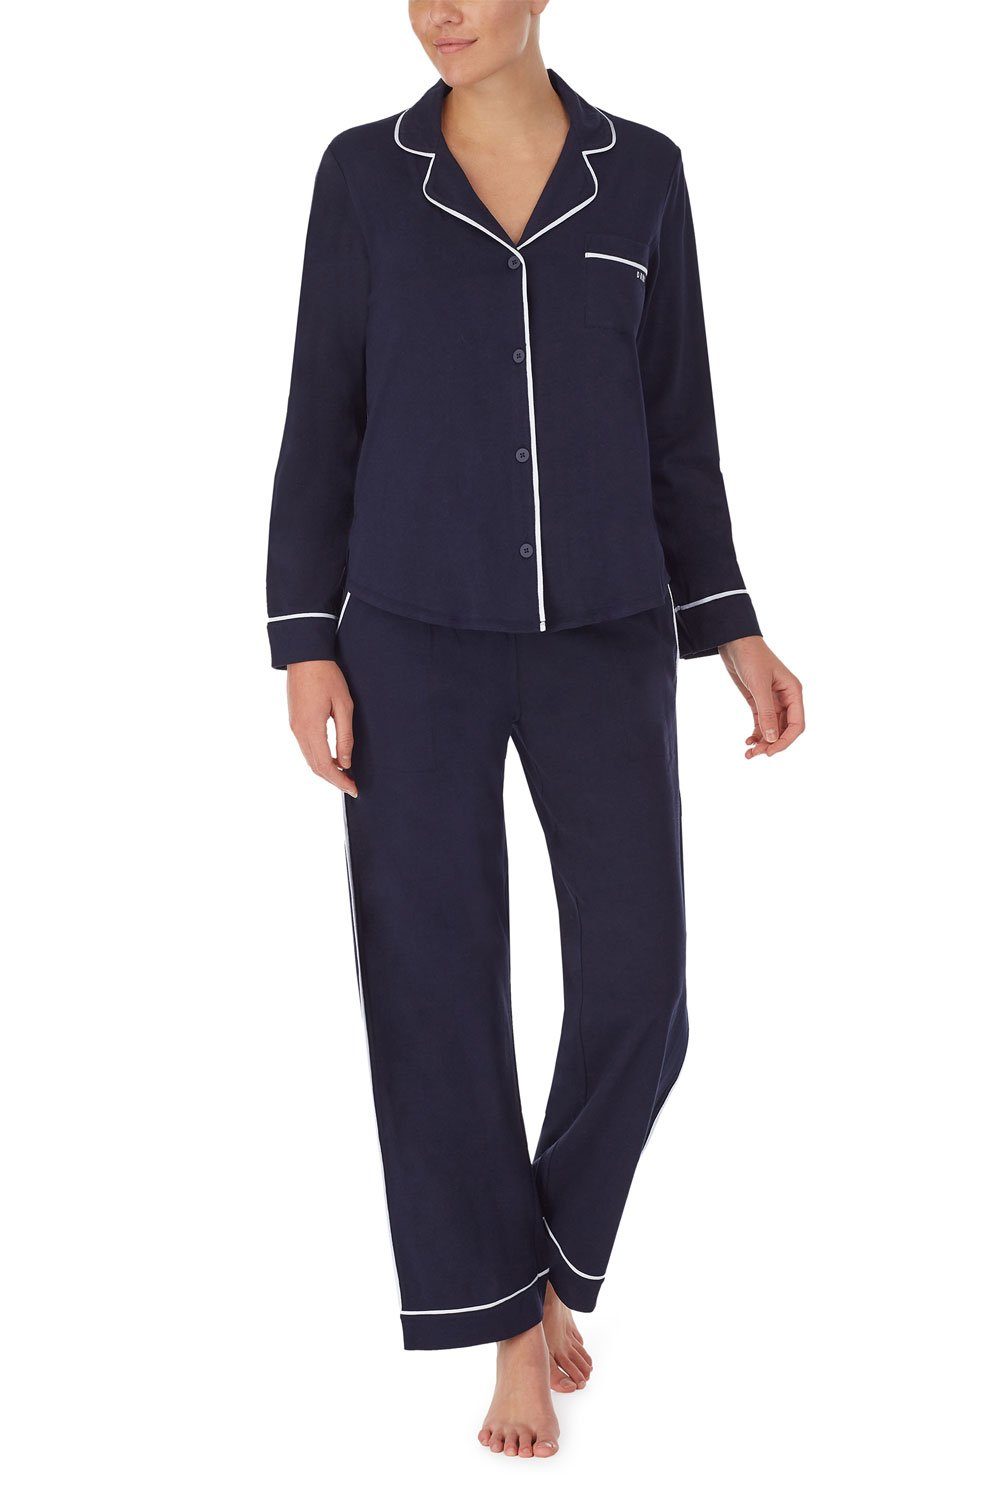 navy DKNY Top & Pyjama Pant Set YI2719259